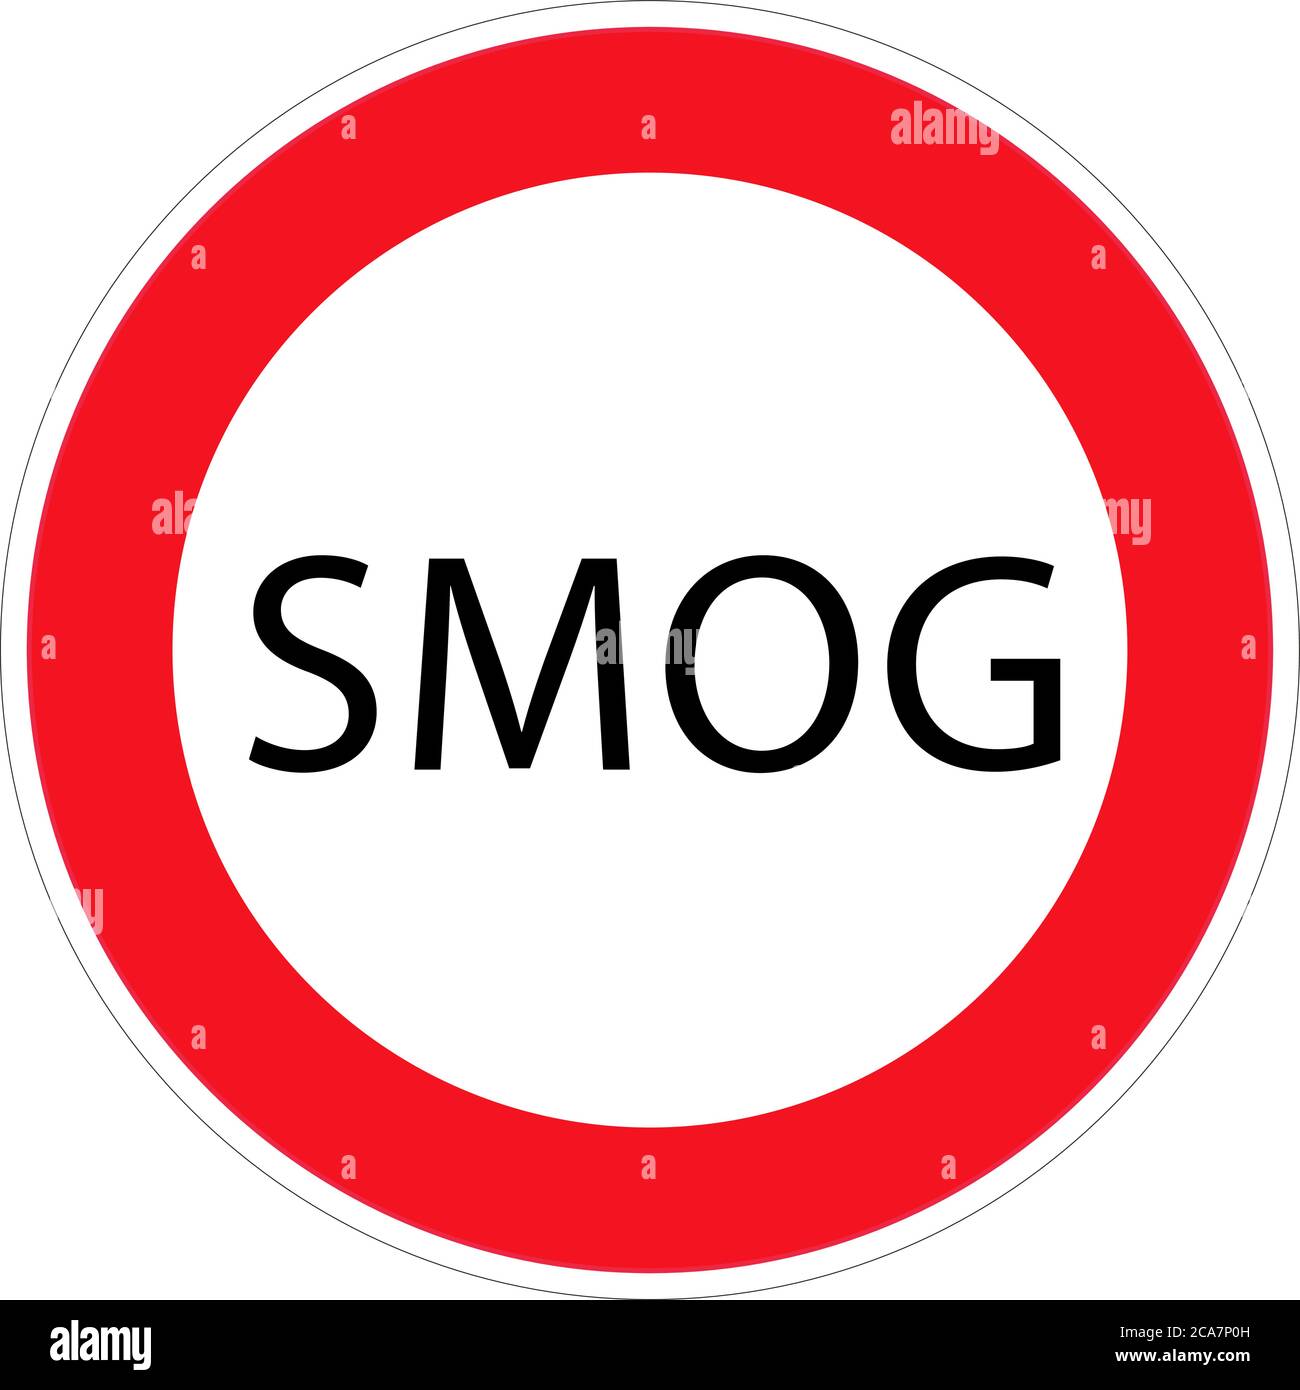 Ein weiteres Verbot, Smog, Straßenschild, Vektor-Symbol. Schwarzer Text in roter Runde mit grauer Kontur auf weißem Hintergrund. Stock Vektor